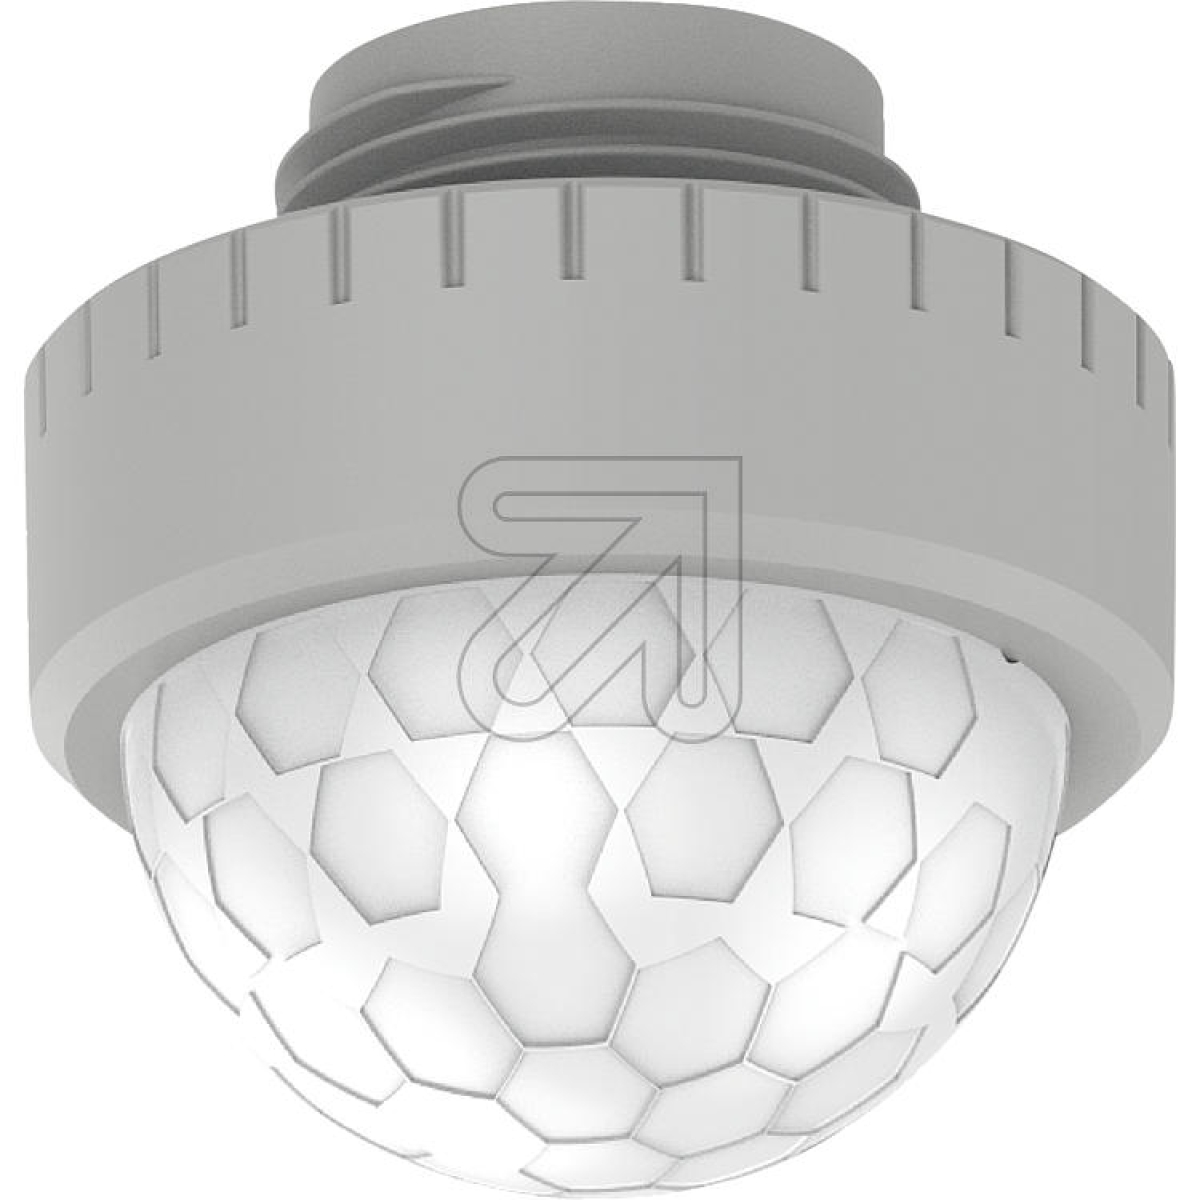 EGBPIR sensor for EGB LED tub light 691960/691965Article-No: 691975